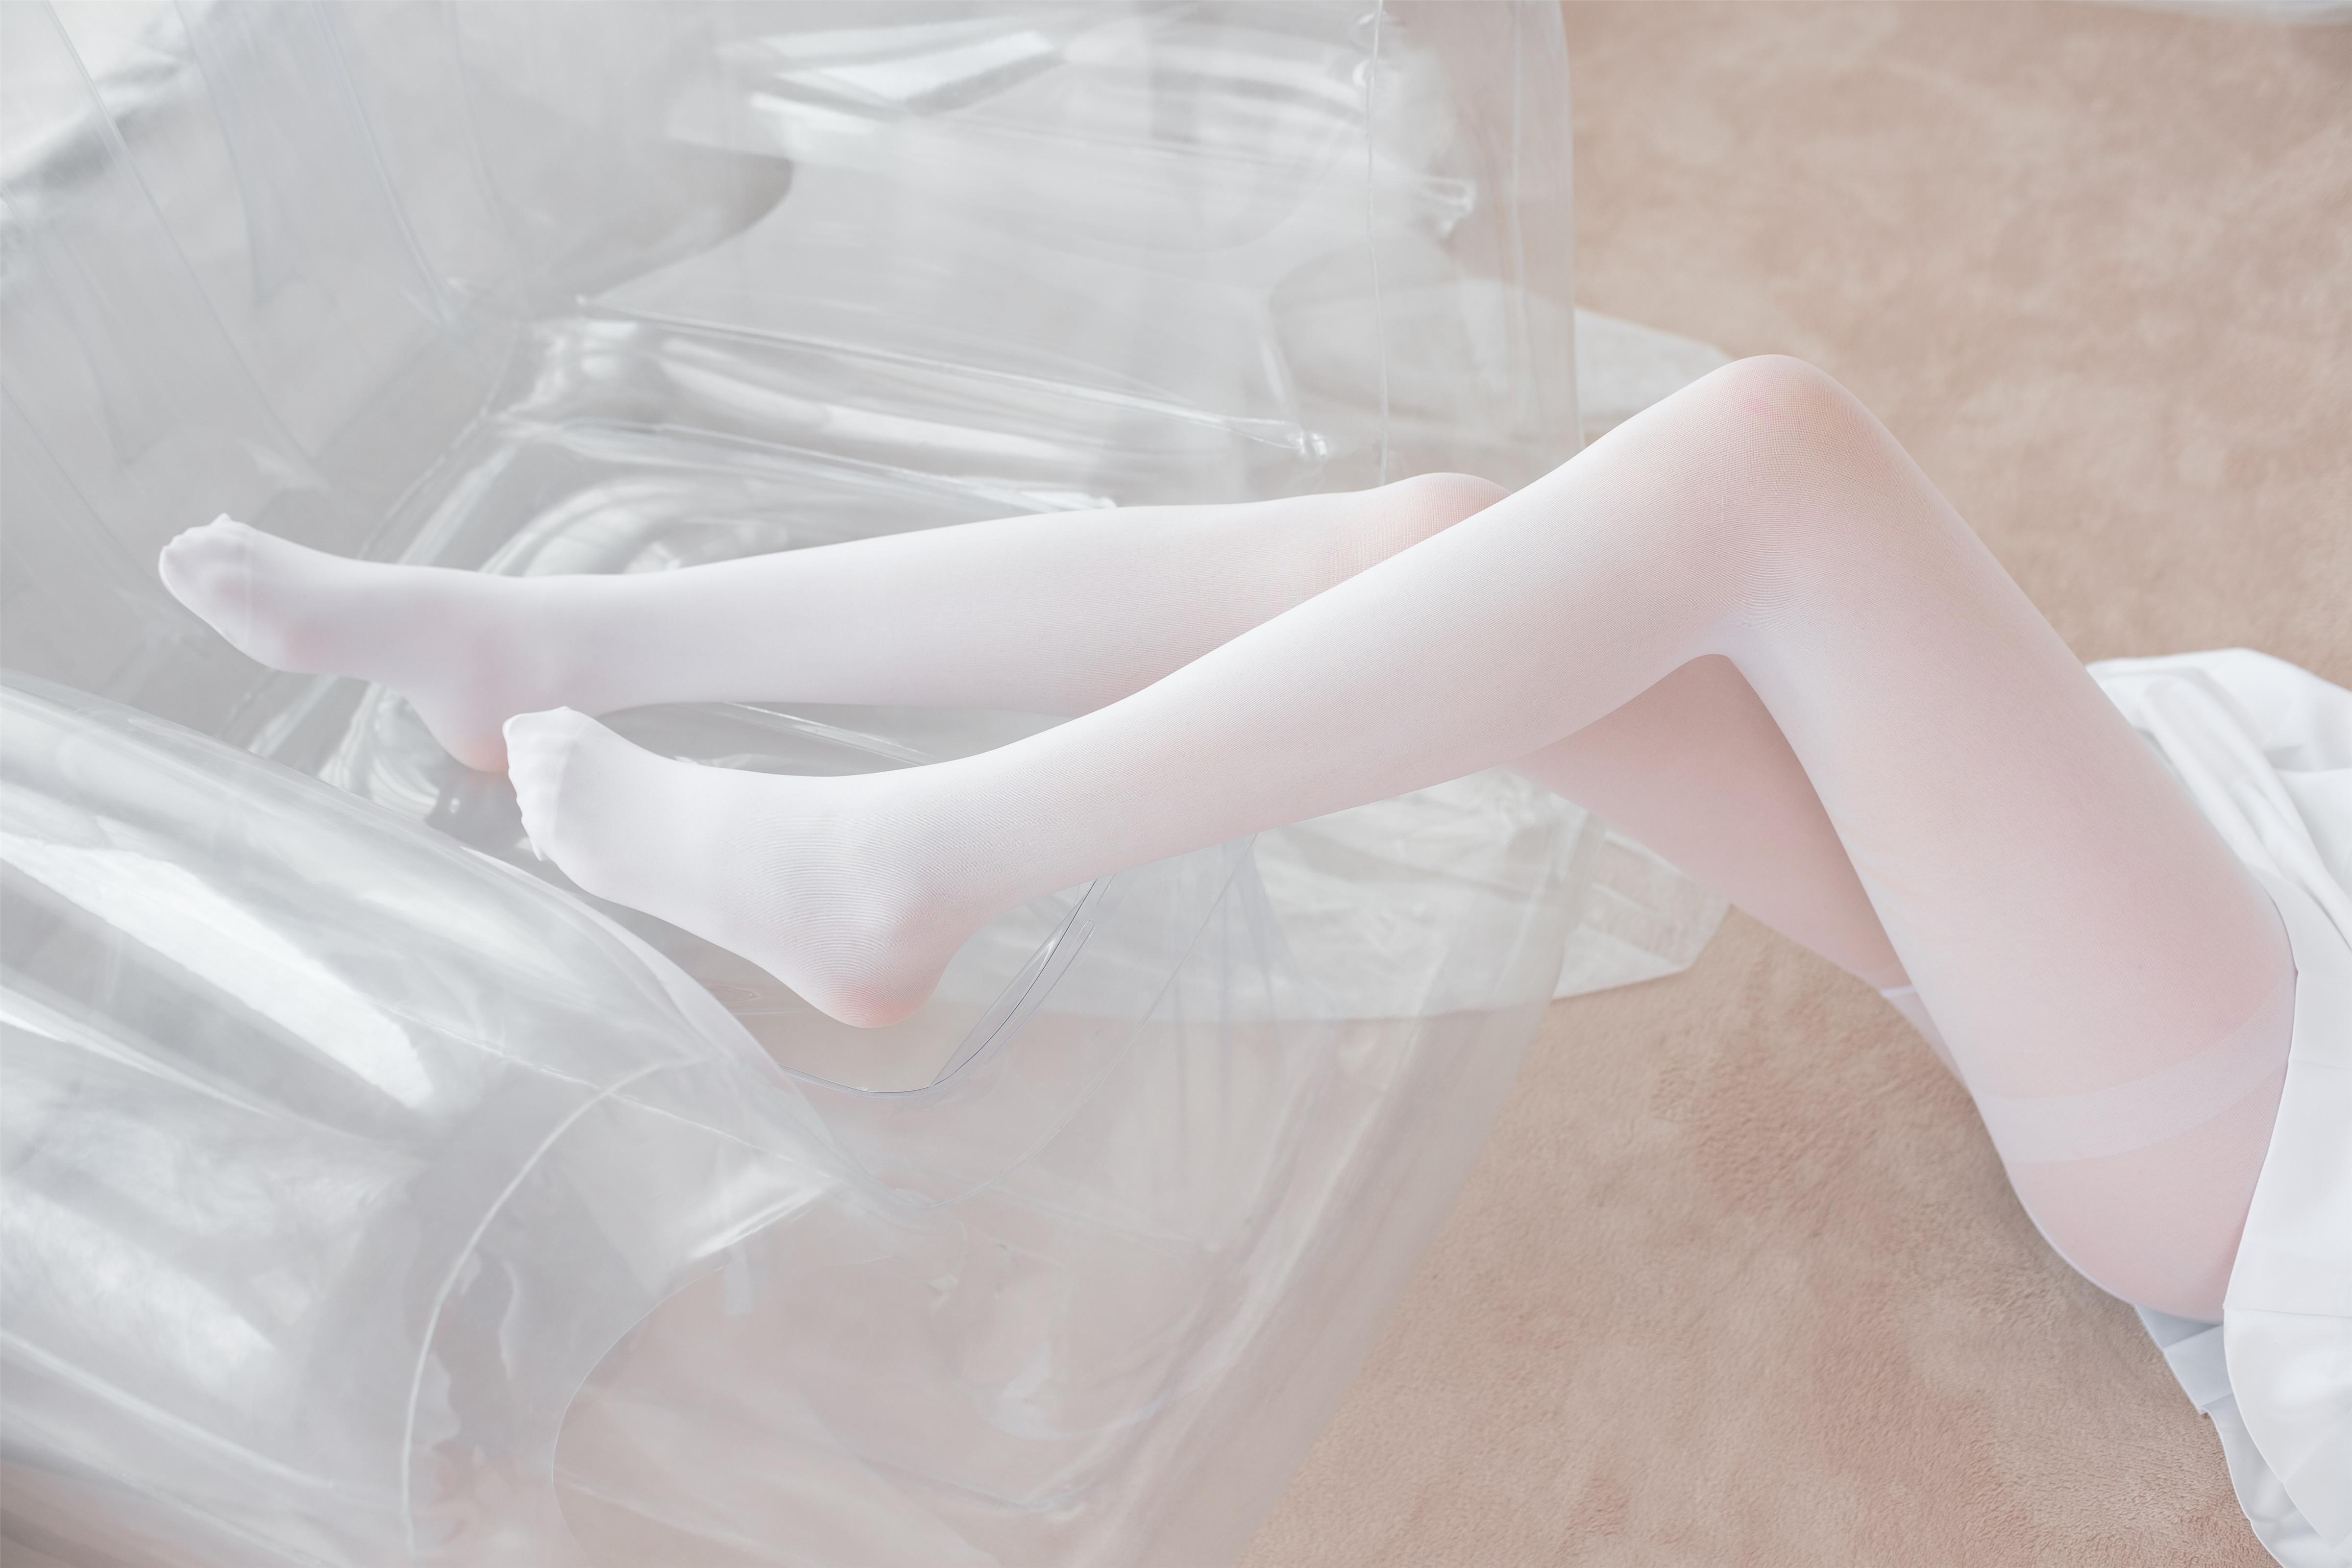 [森萝财团]X-038 清纯可爱小萝莉 白色高中女生制服与白色短裙加白色丝袜美腿玉足性感私房写真集,